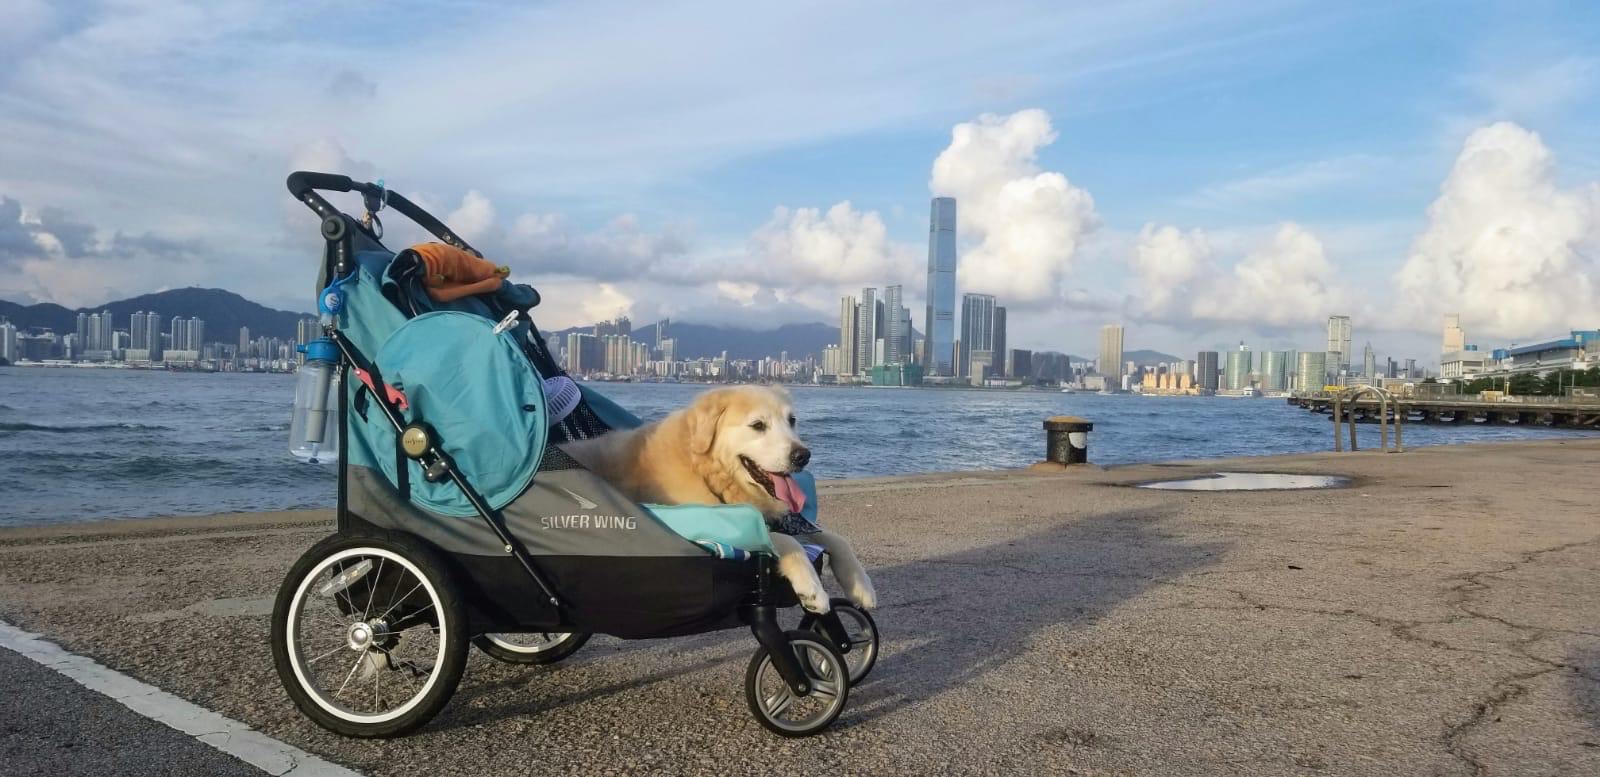 Labrador,old dog stroller,705gx, dog care, petstro